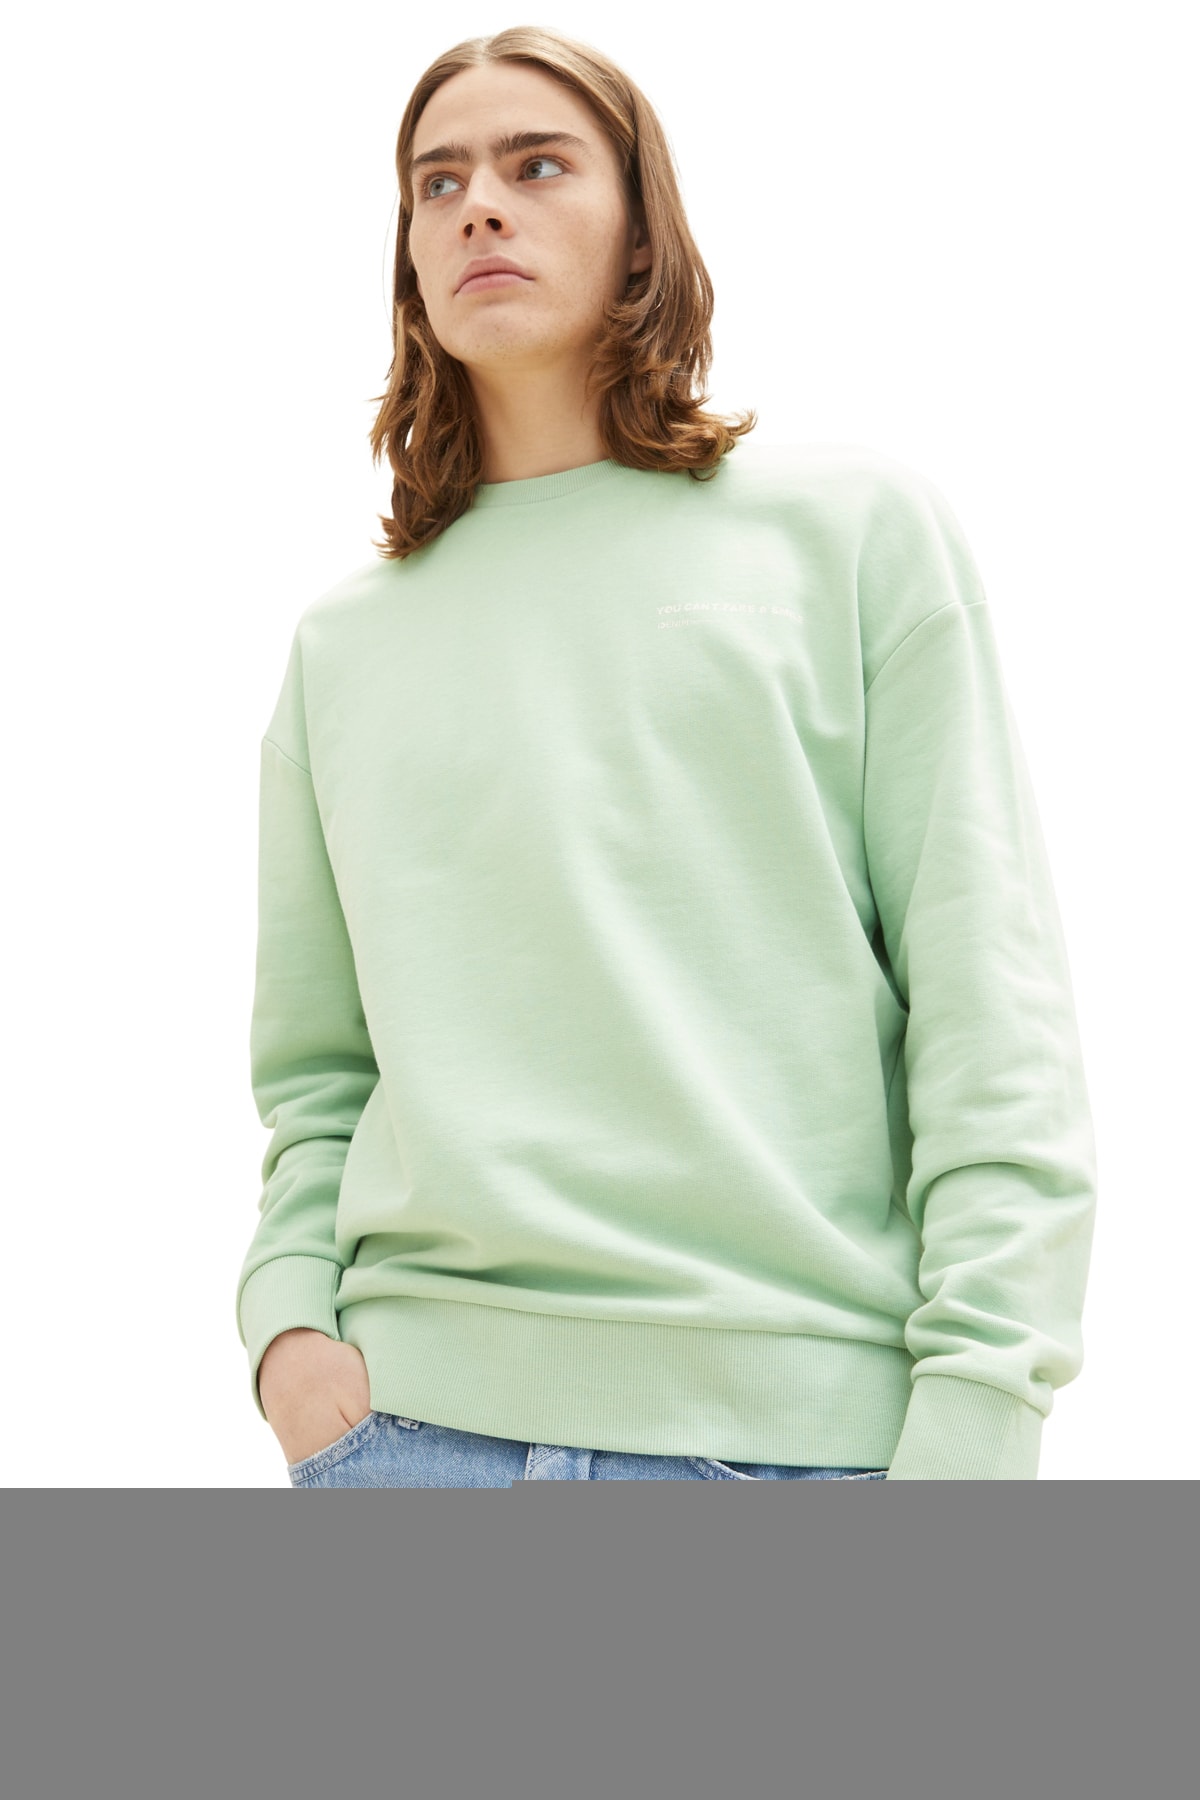 Мужская футболка спокойного зеленого цвета Tom Tailor Denim, темно-синий